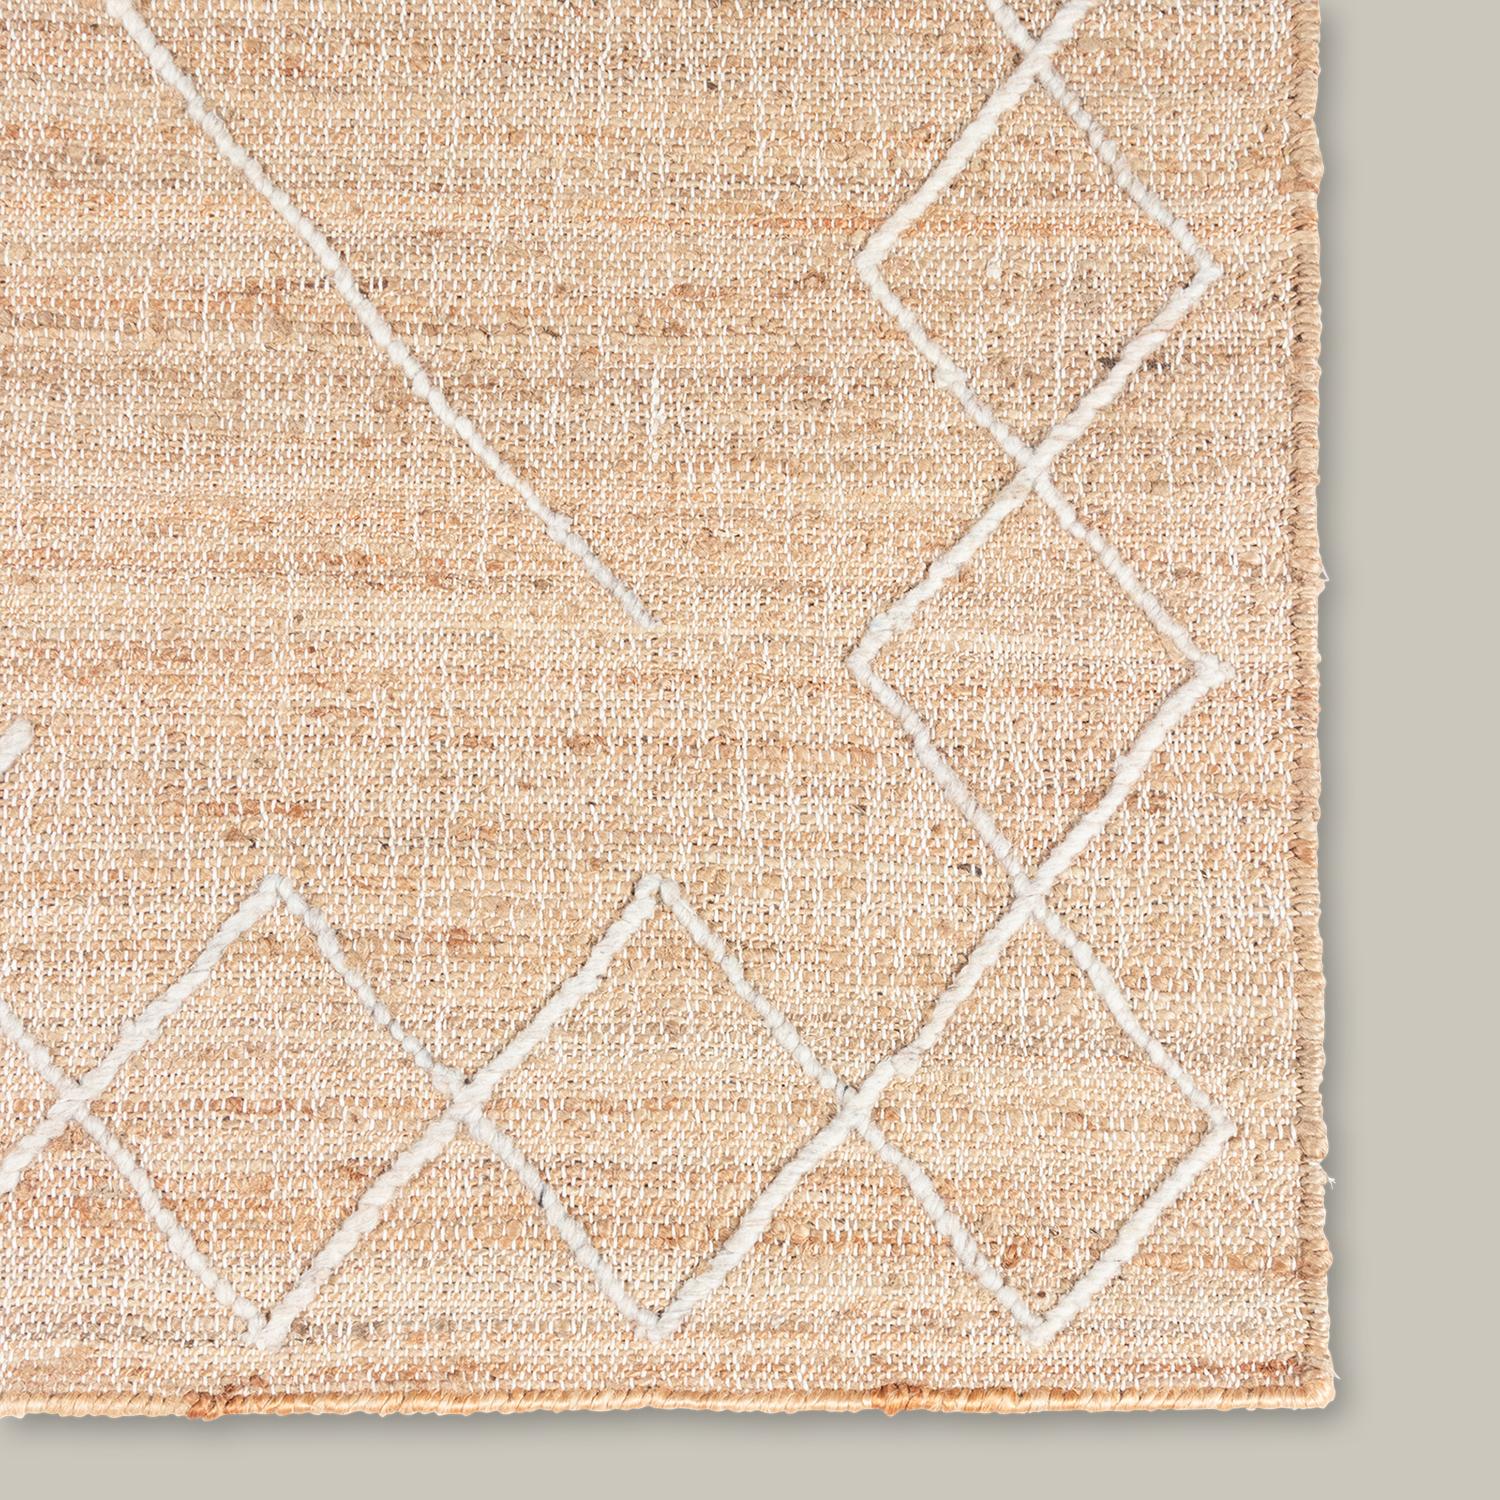 Avec un respect pour la symétrie et les formes géométriques simples, la collection Argan a été inspirée par les motifs traditionnels des tissus de boue africains. Fabriqué à partir d'une combinaison de jute et de laine tissée à la main, chaque tapis